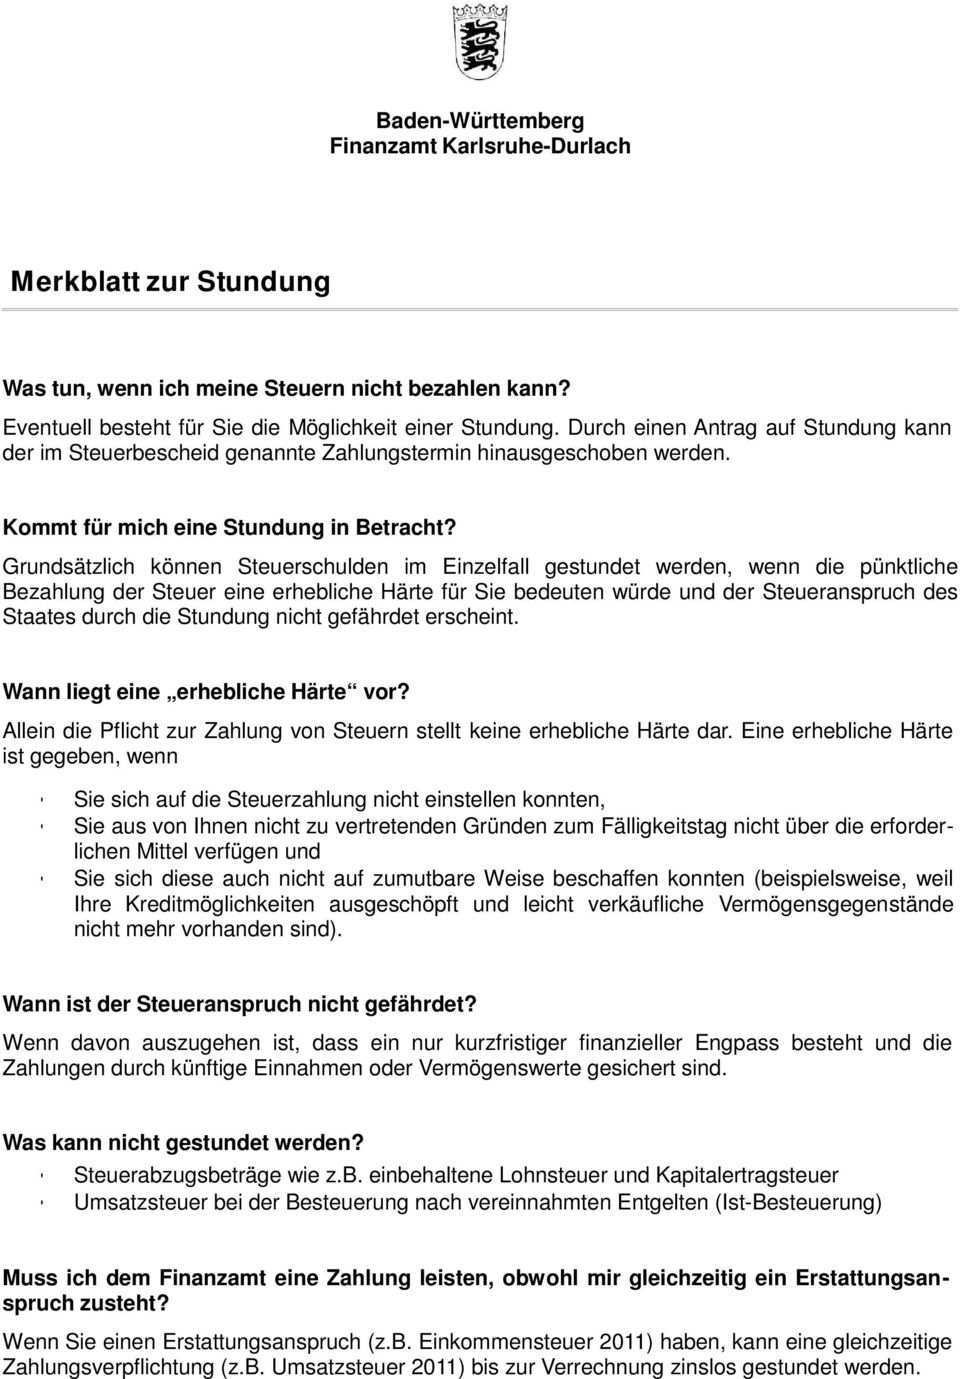 Merkblatt Zur Stundung Pdf Kostenfreier Download